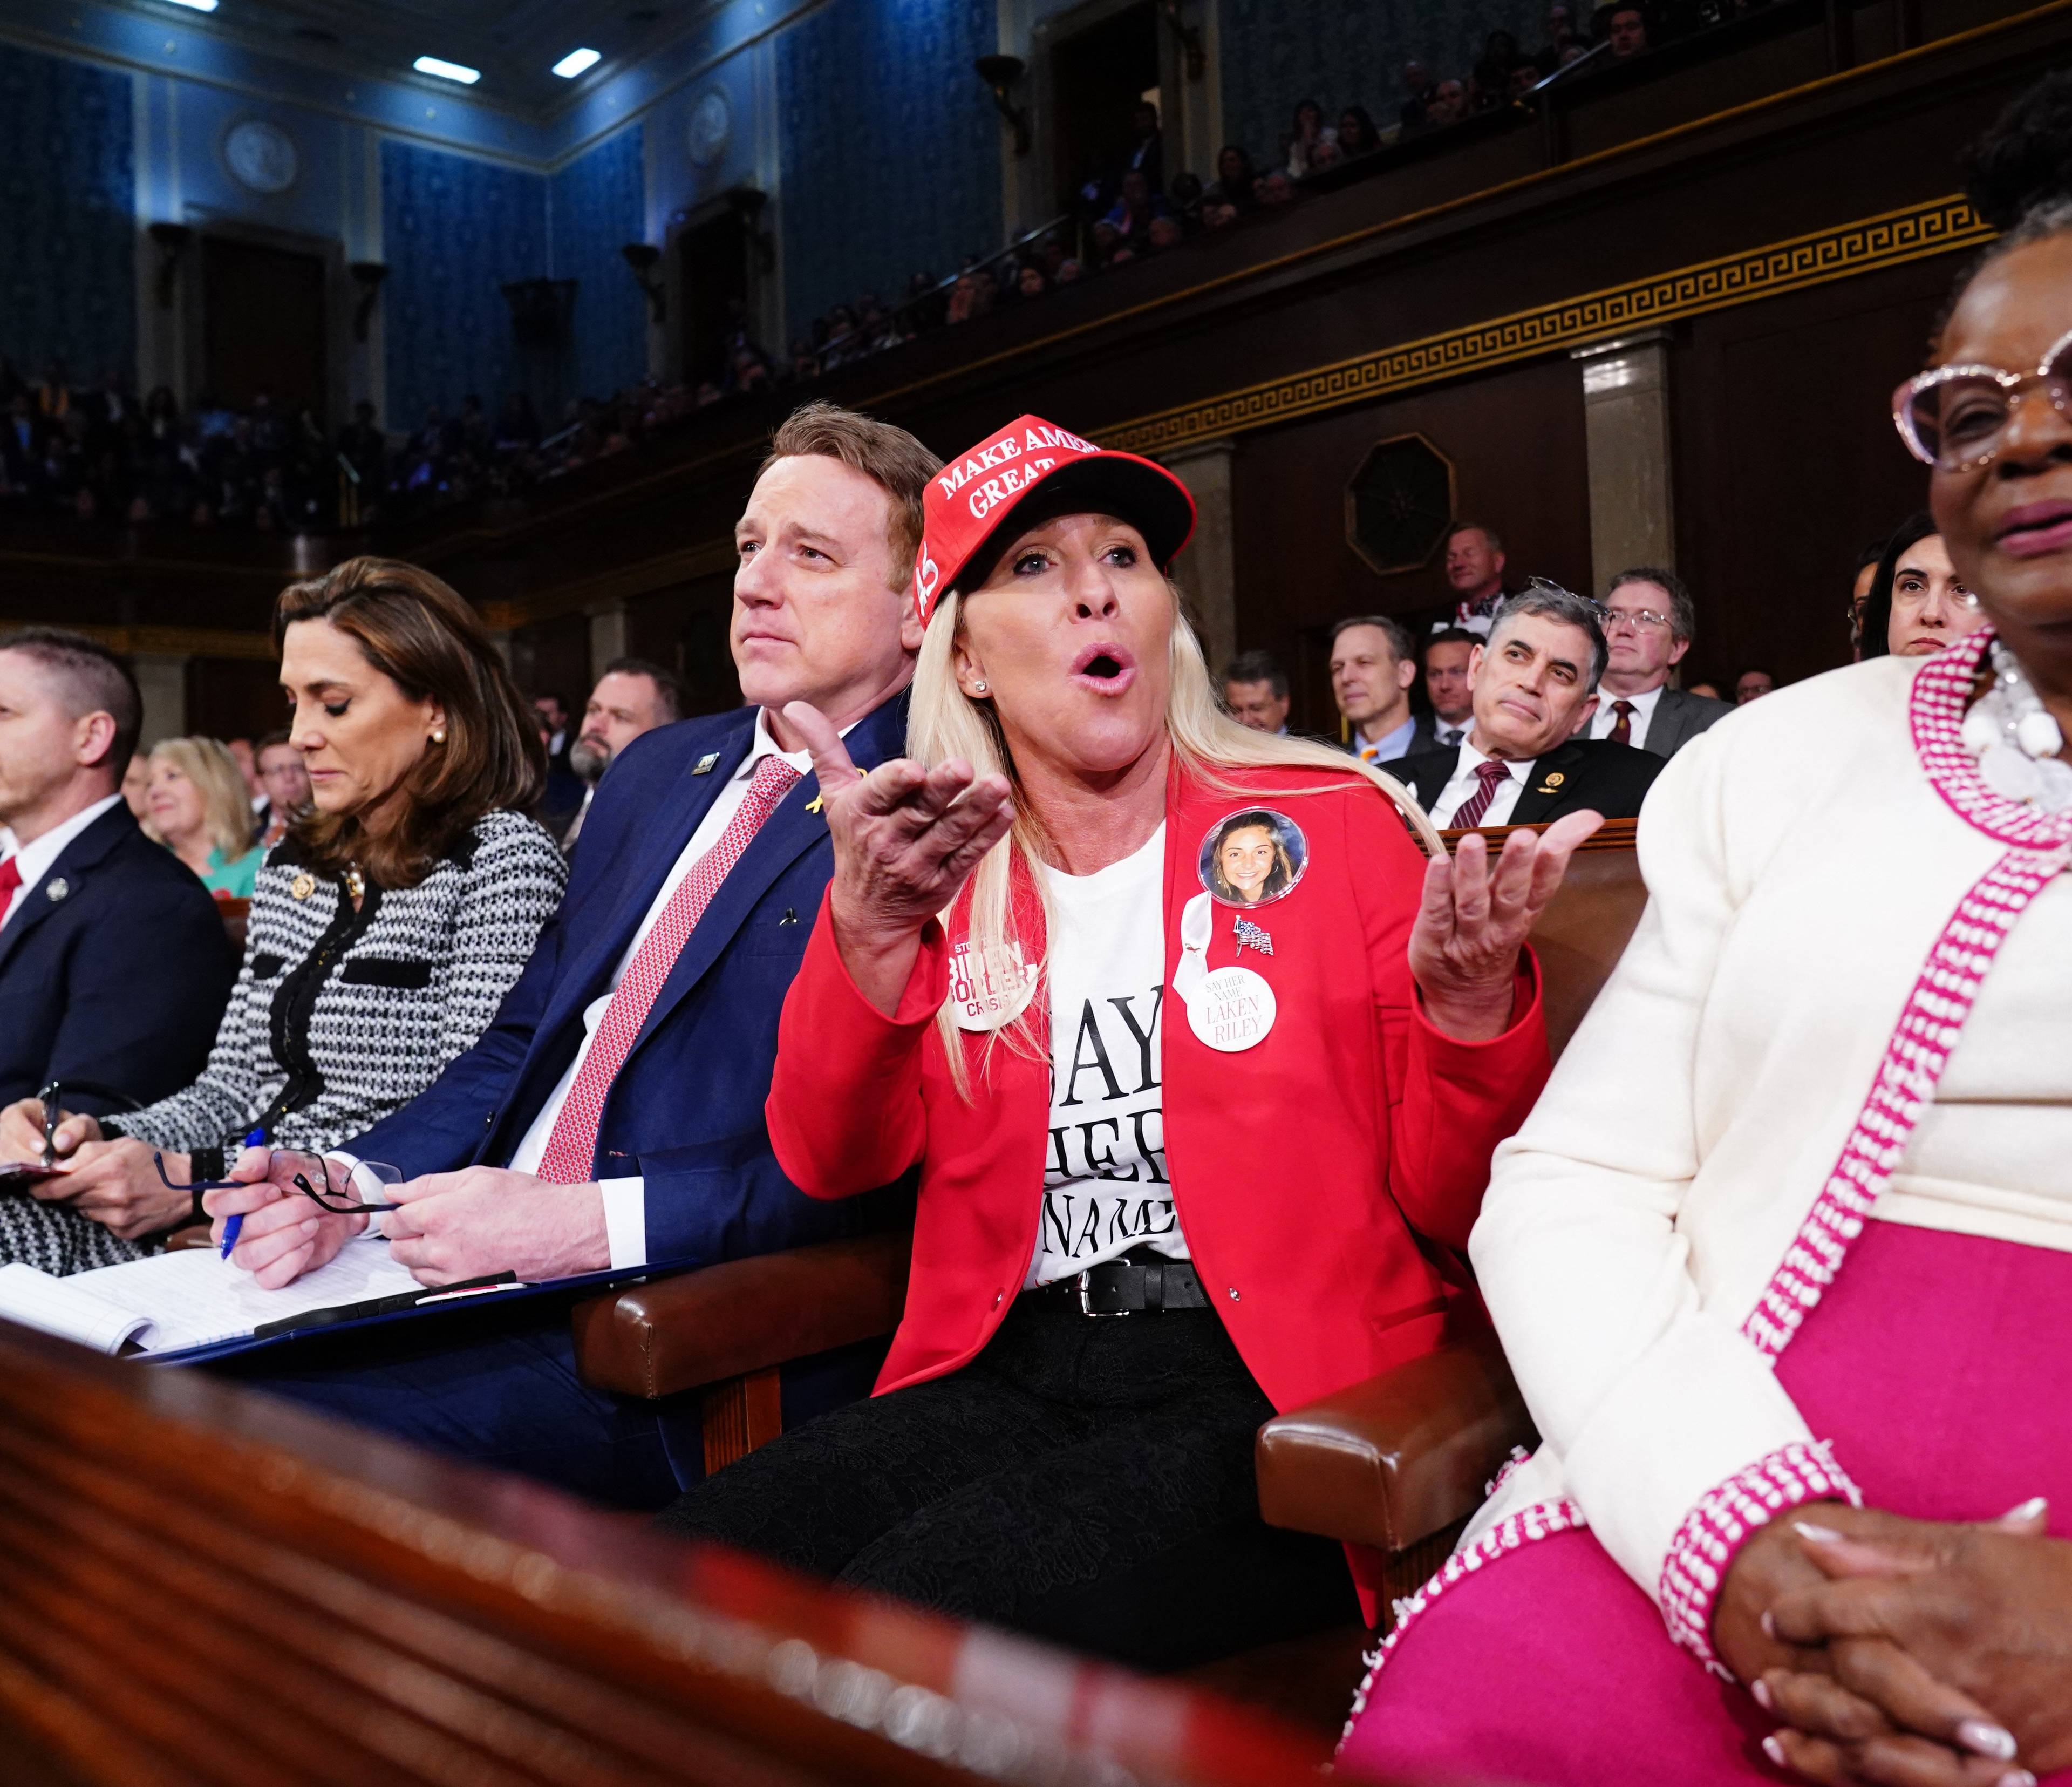 Kobieta ubrana na czerwono z czerwoną czapką na głowie krzyczy siedzie w ławach amerykańskiego kongresu